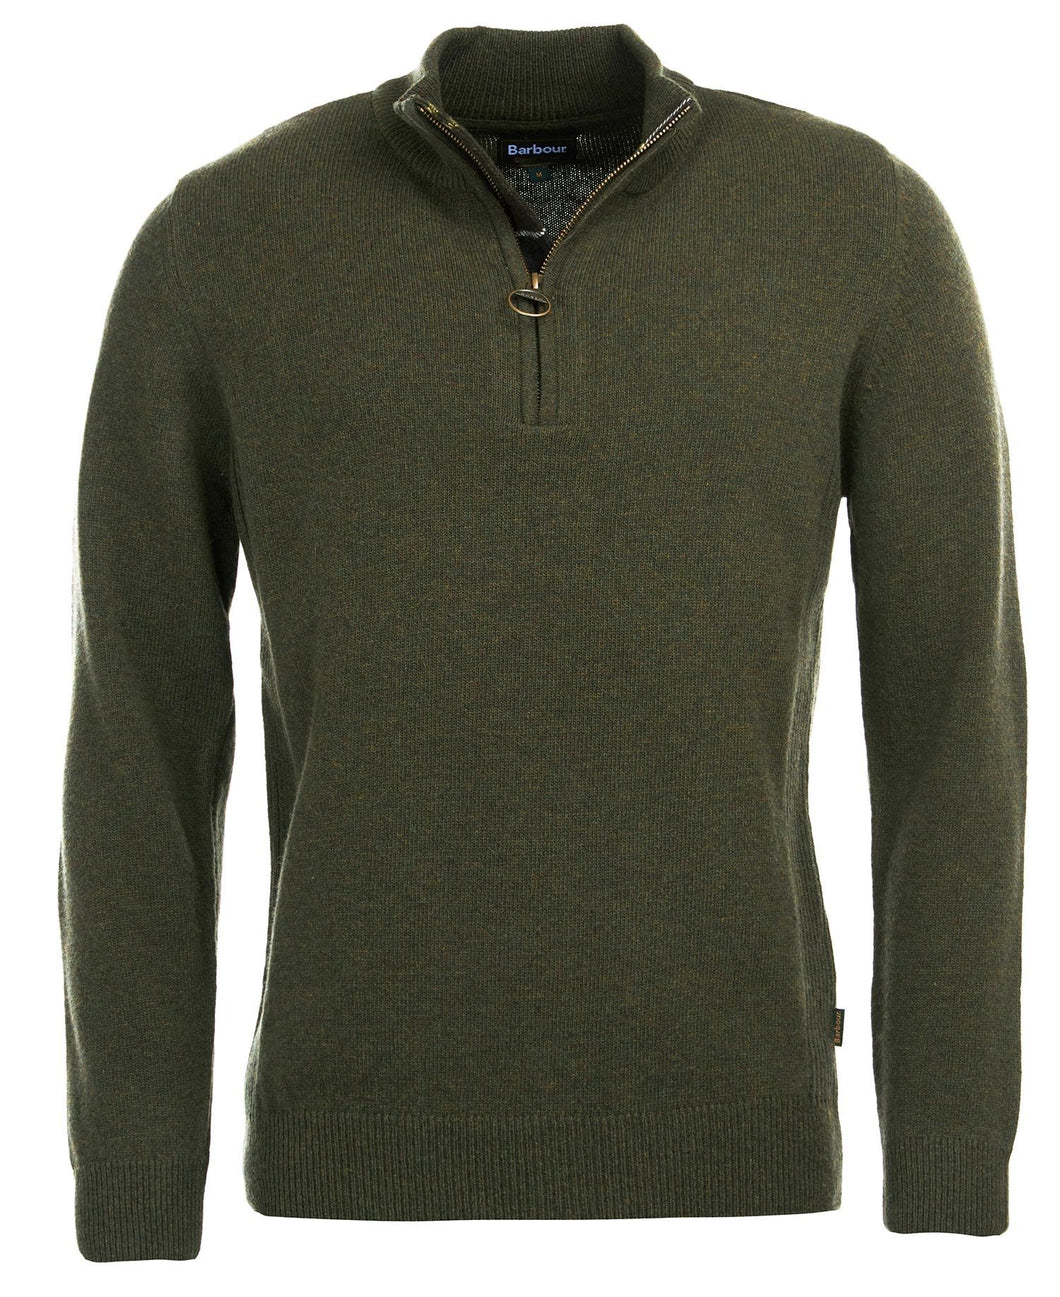 Barbour Holden Half Zip Sweater | Olive